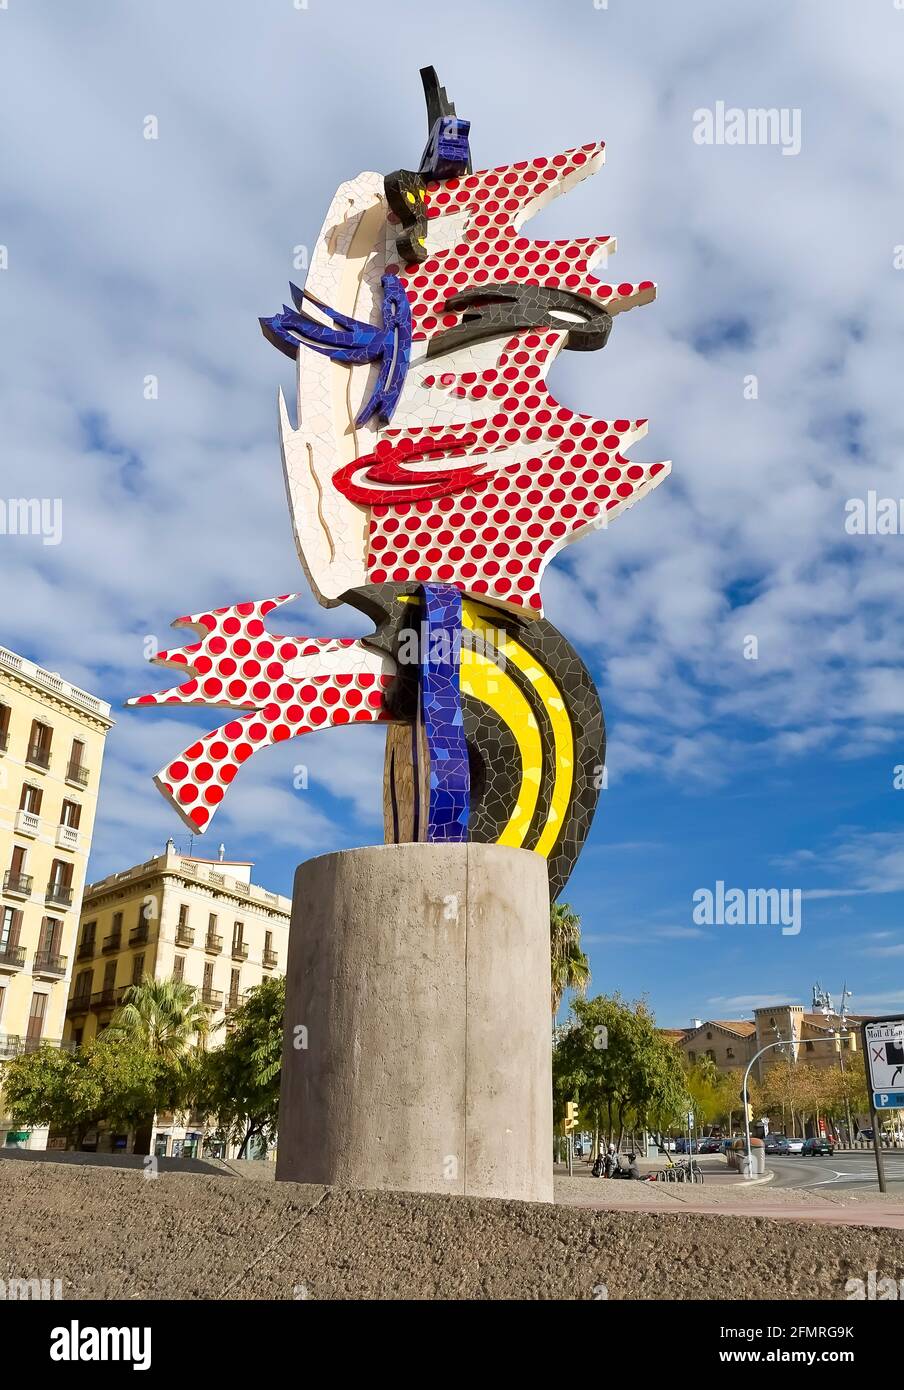 BARCELONE- DÉCEMBRE 19: La sculpture moderne le 19 décembre 2010 à Barcelone (Espagne).la tête de Barcelone est une sculpture surréaliste créée par American Banque D'Images